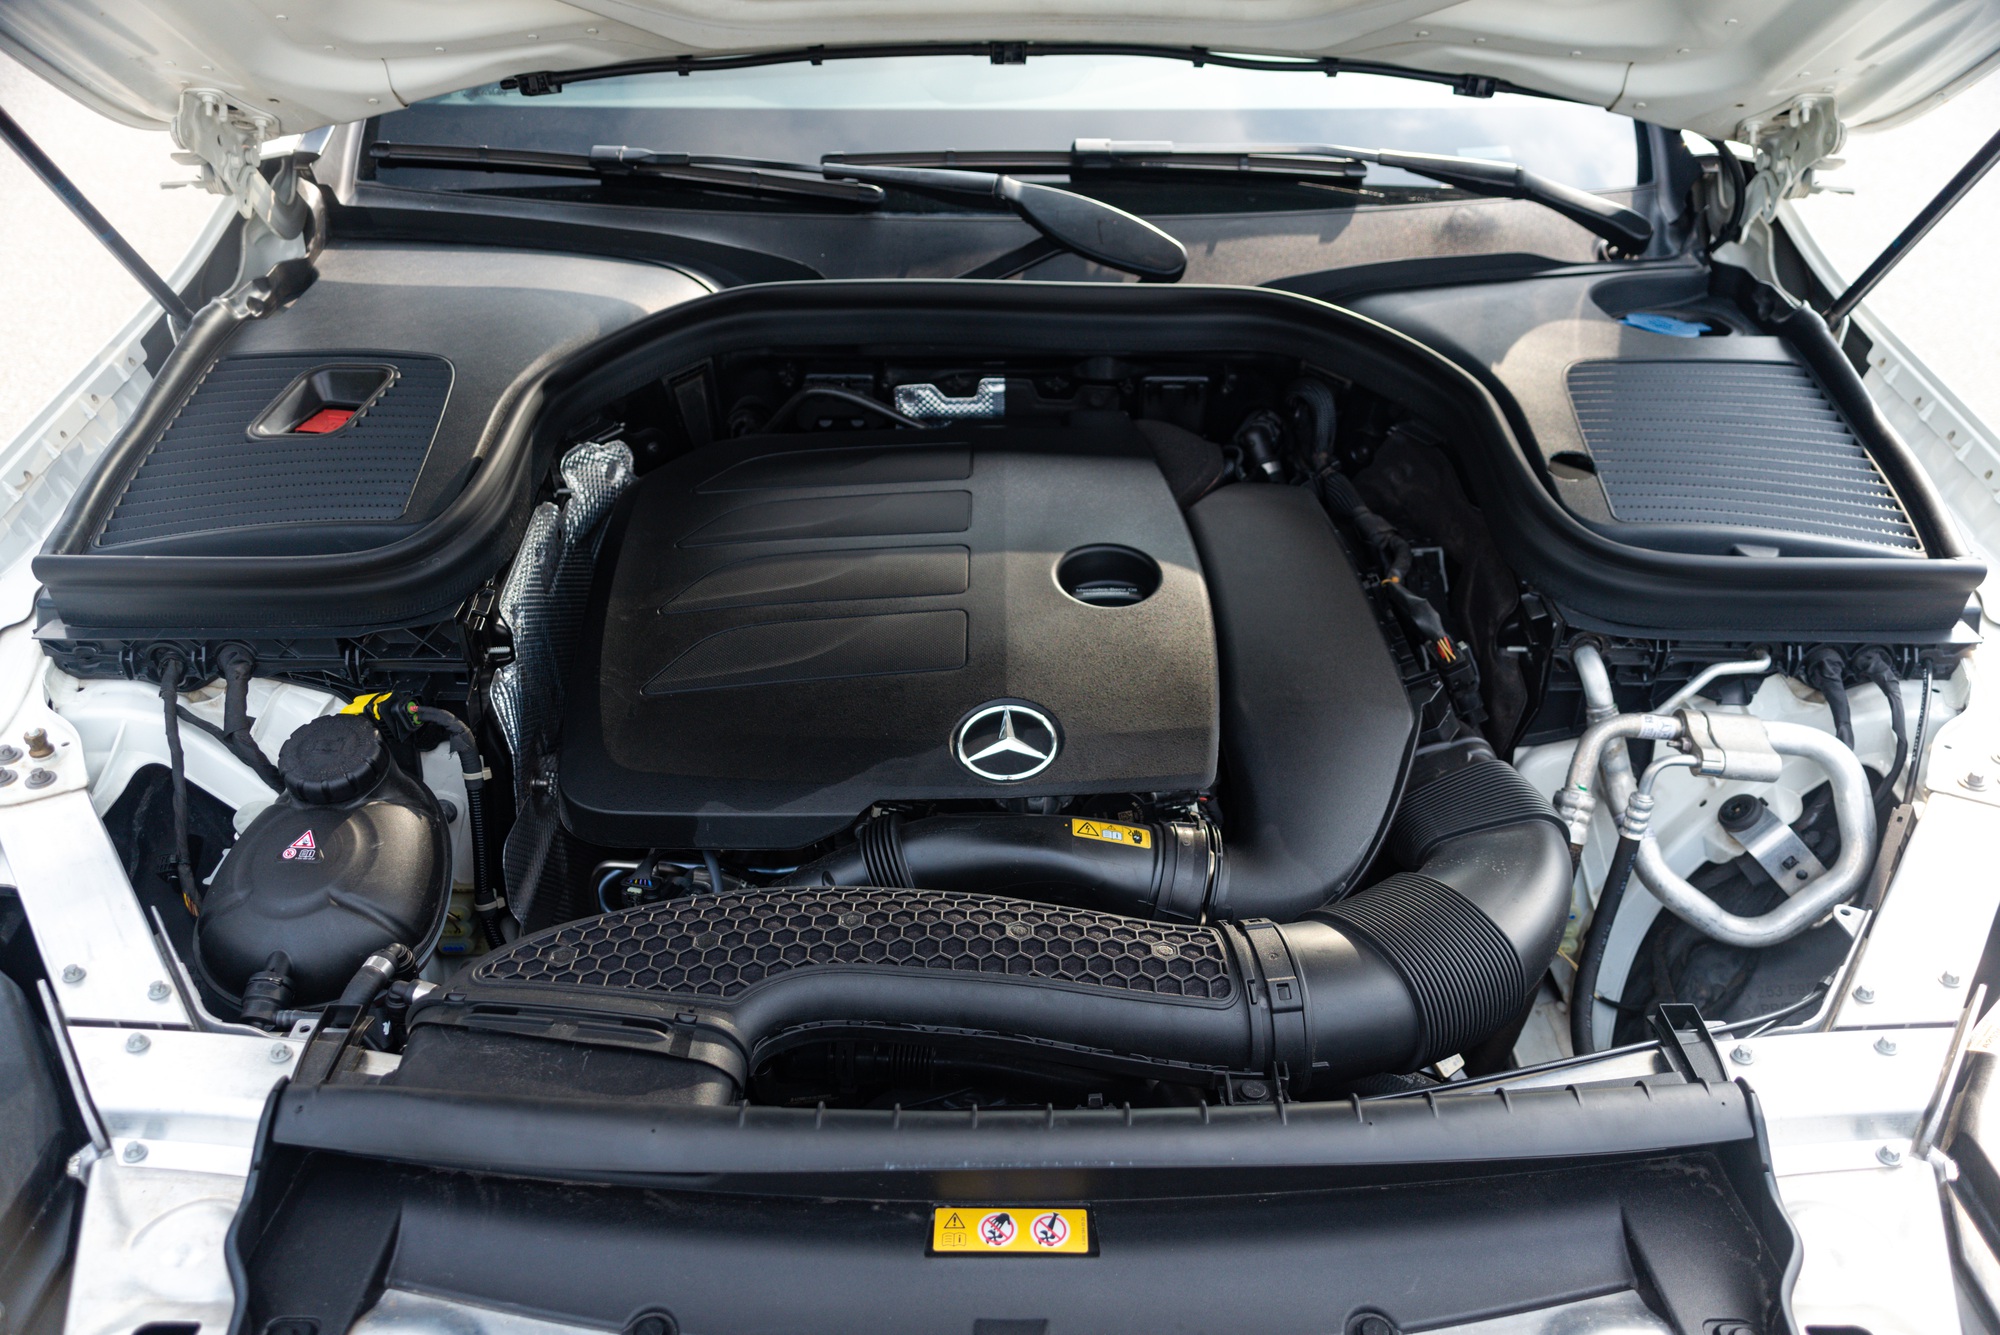 ‘Hàng hiếm’ Mercedes-Benz GLC 300 Coupe 2 năm tuổi được rao bán lại với mức giá gần 2,7 tỷ đồng - Ảnh 15.